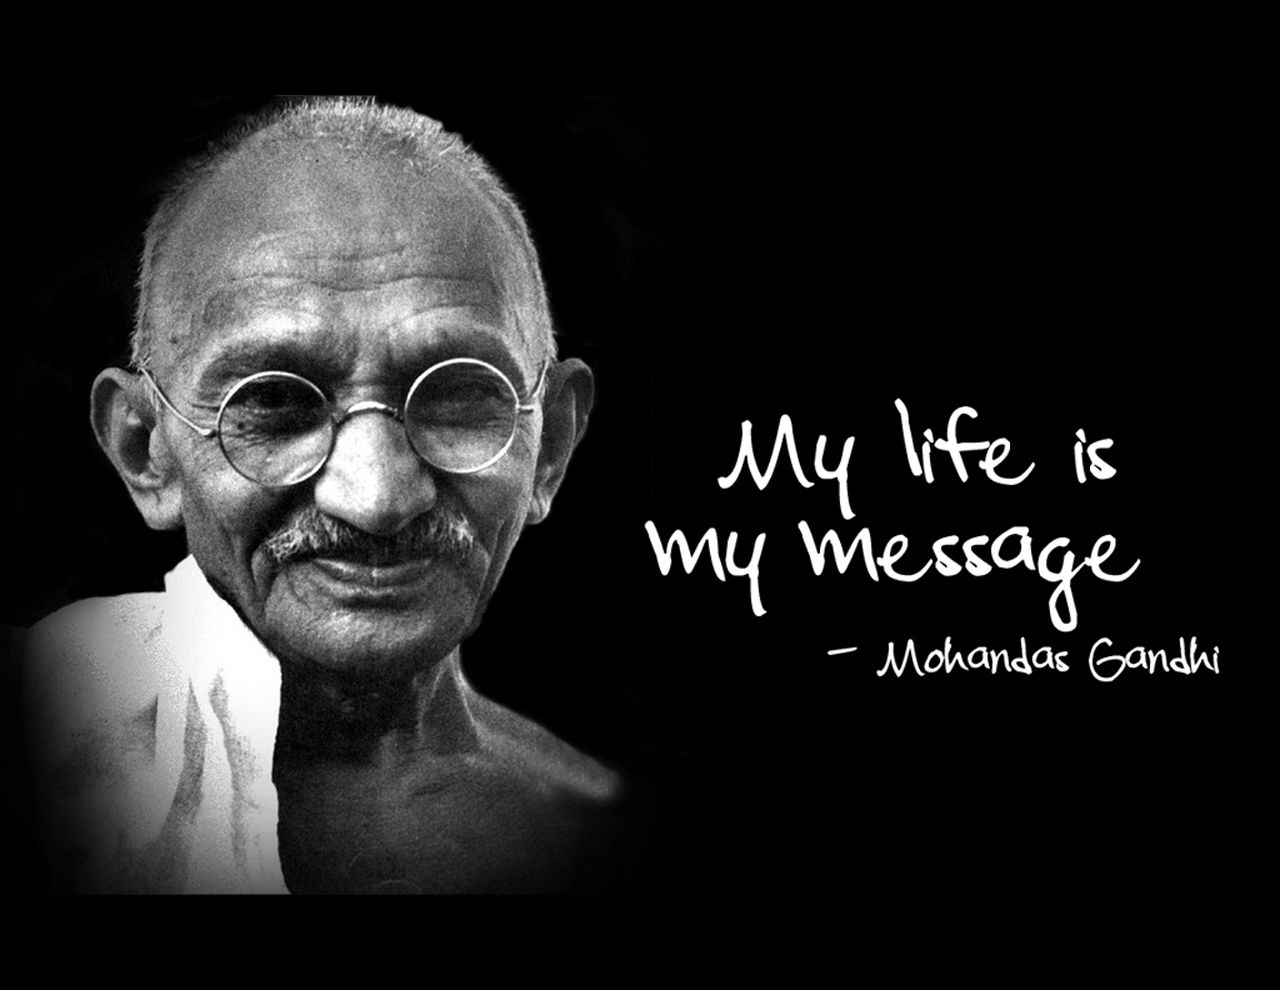 gandhi jayanthi wallpaper. Gandhi quotes, Ghandi quotes, Mahatma gandhi quotes